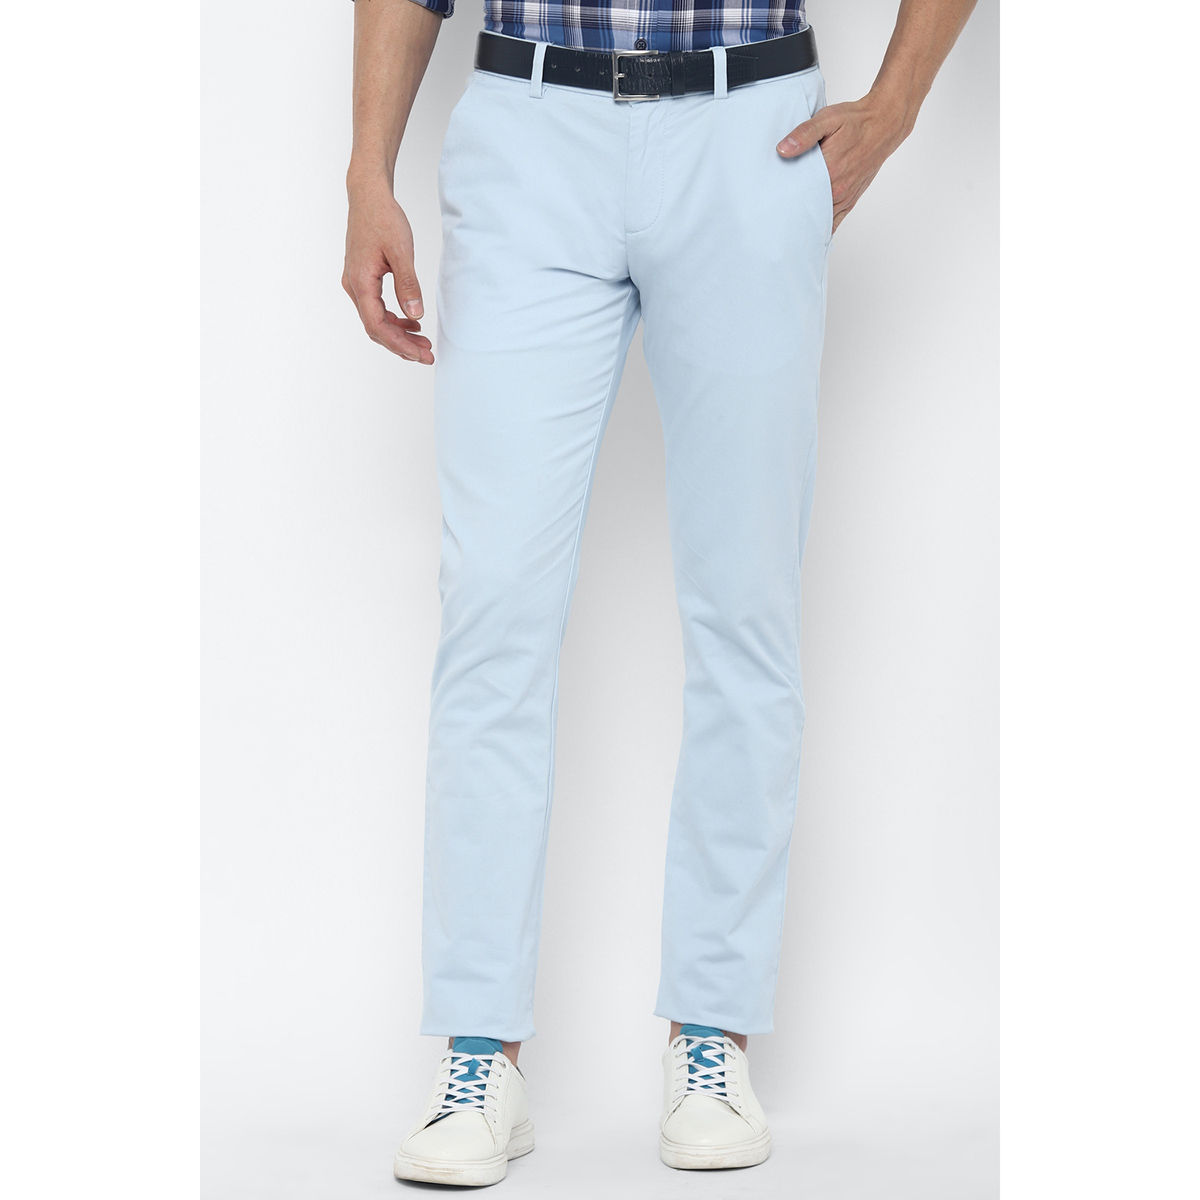 Allen Solly Blue Casual Trouser Buy Allen Solly Blue Casual Trouser Online  at Best Price in India  NykaaMan